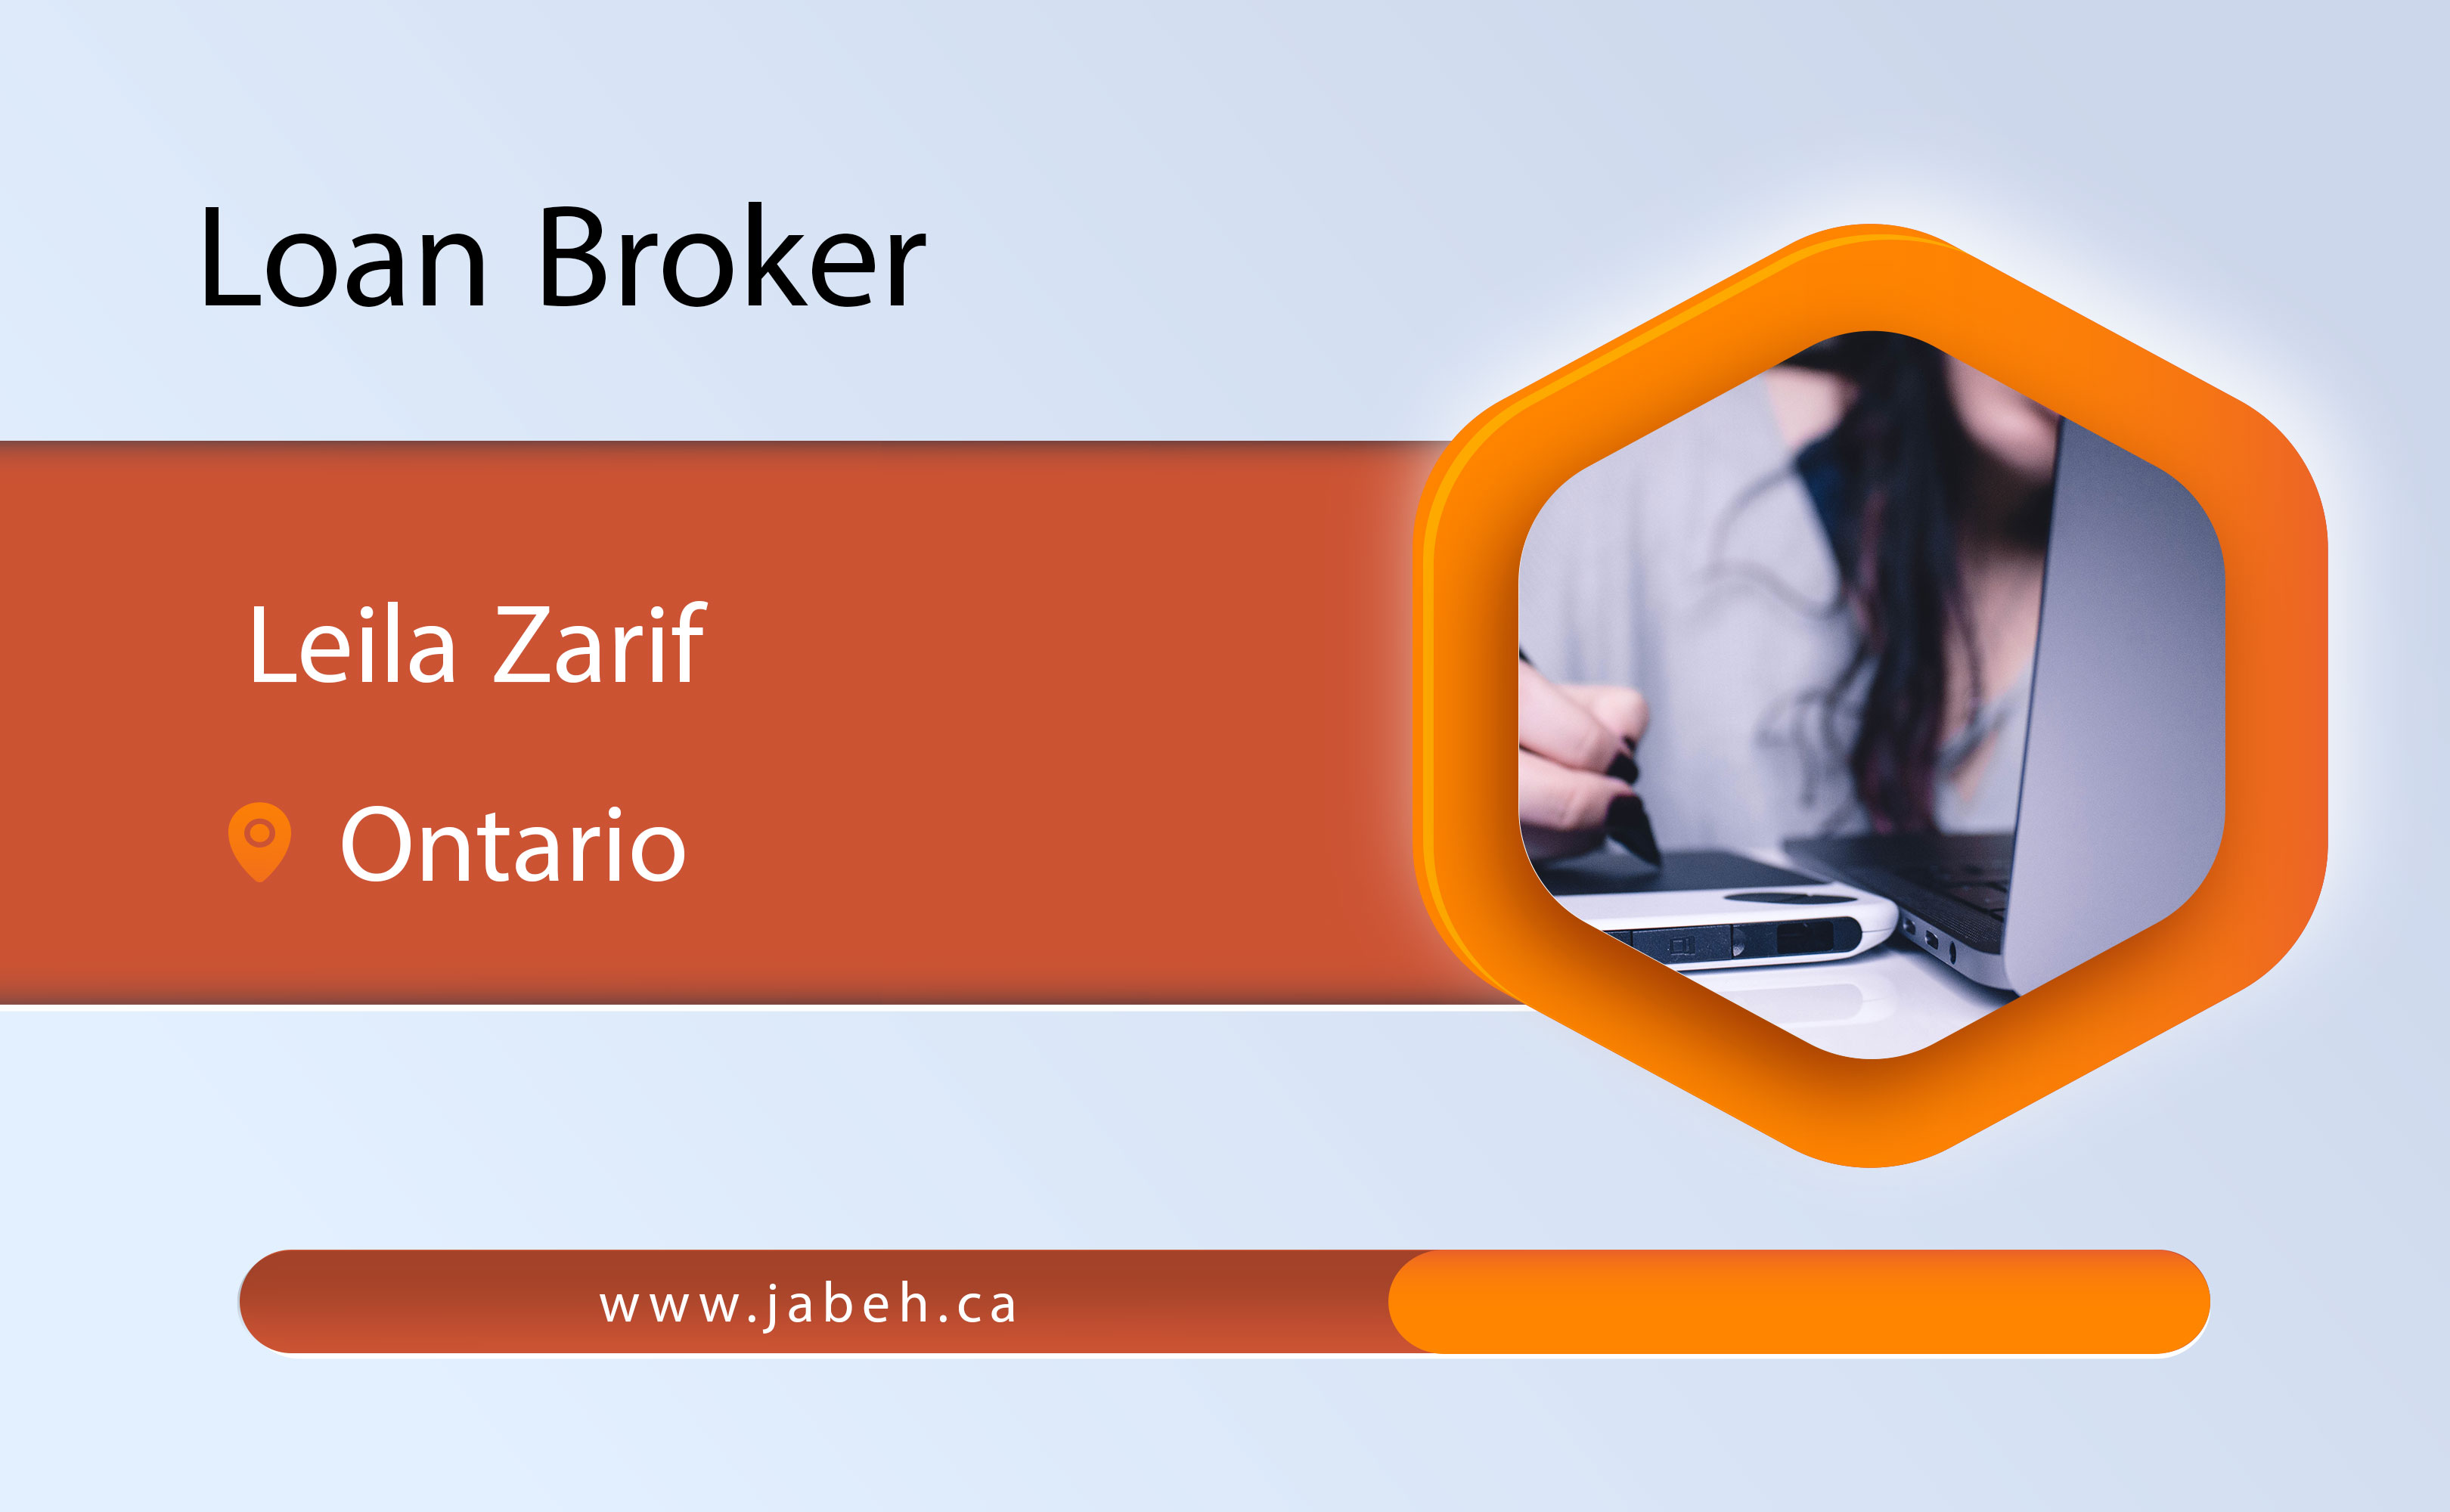 Iranian loan broker Leila Zarif in Ontario